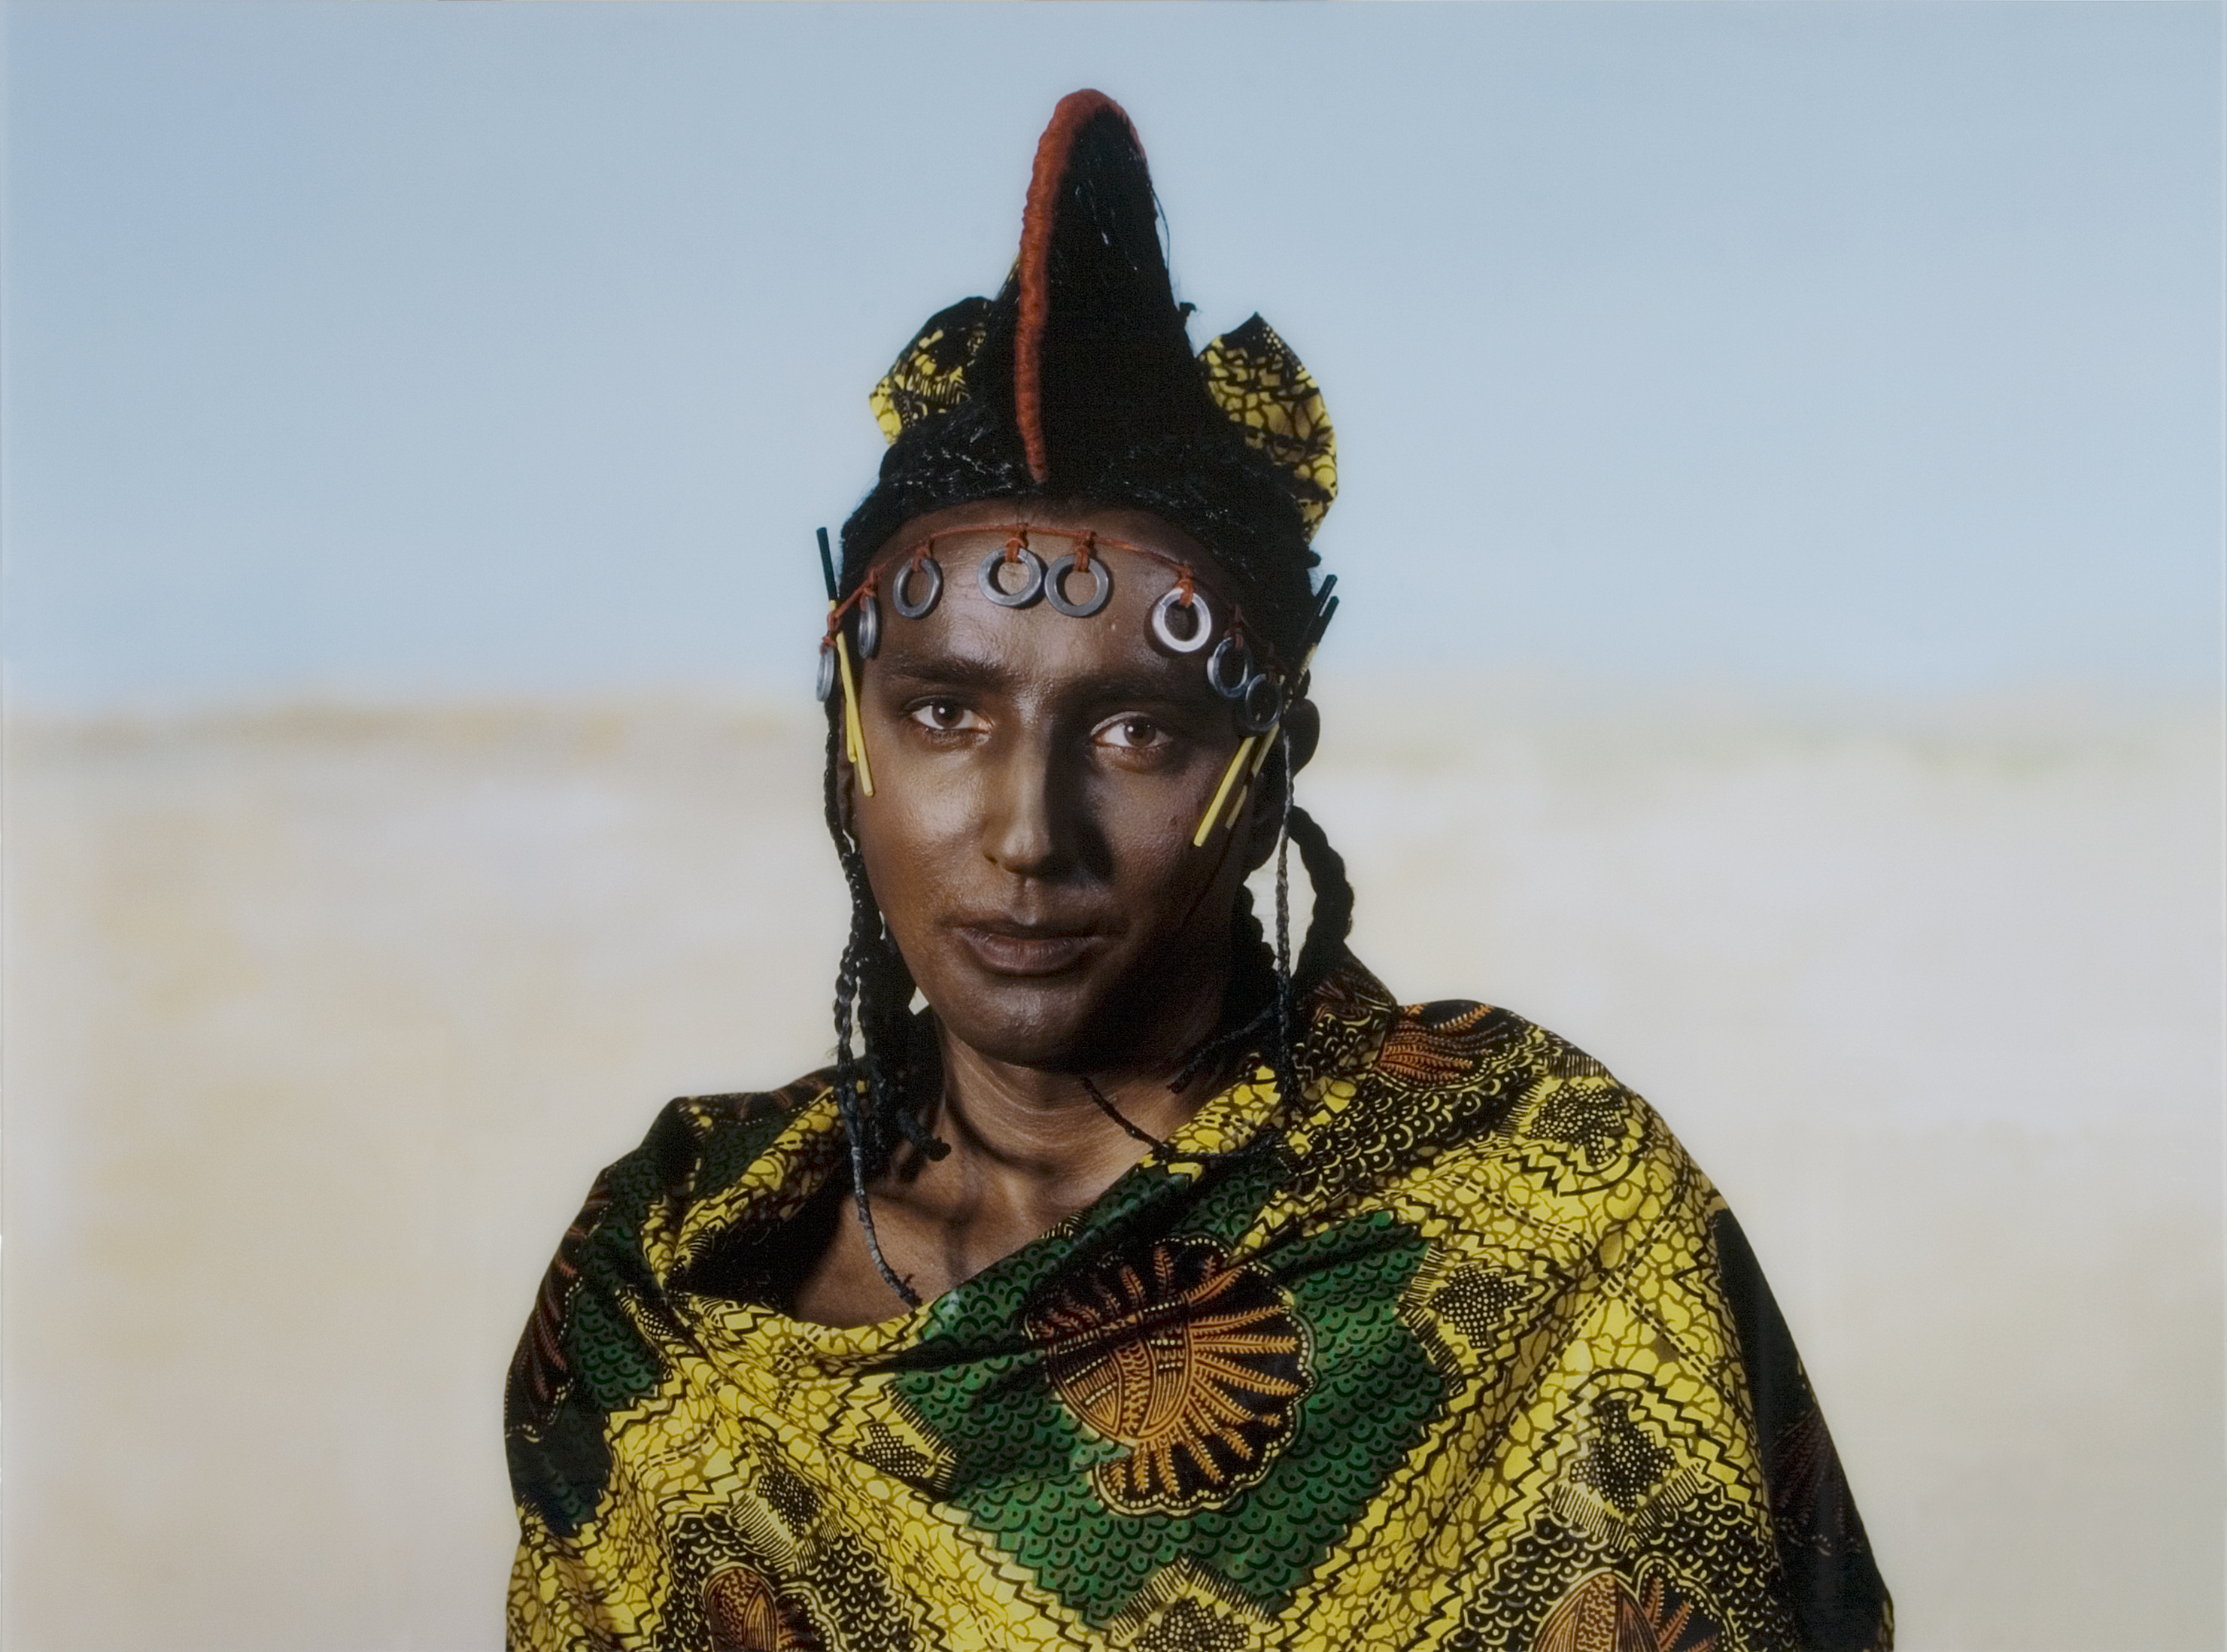 Autoportret Kobiety Nigeryjskiej z plemienia Fulani